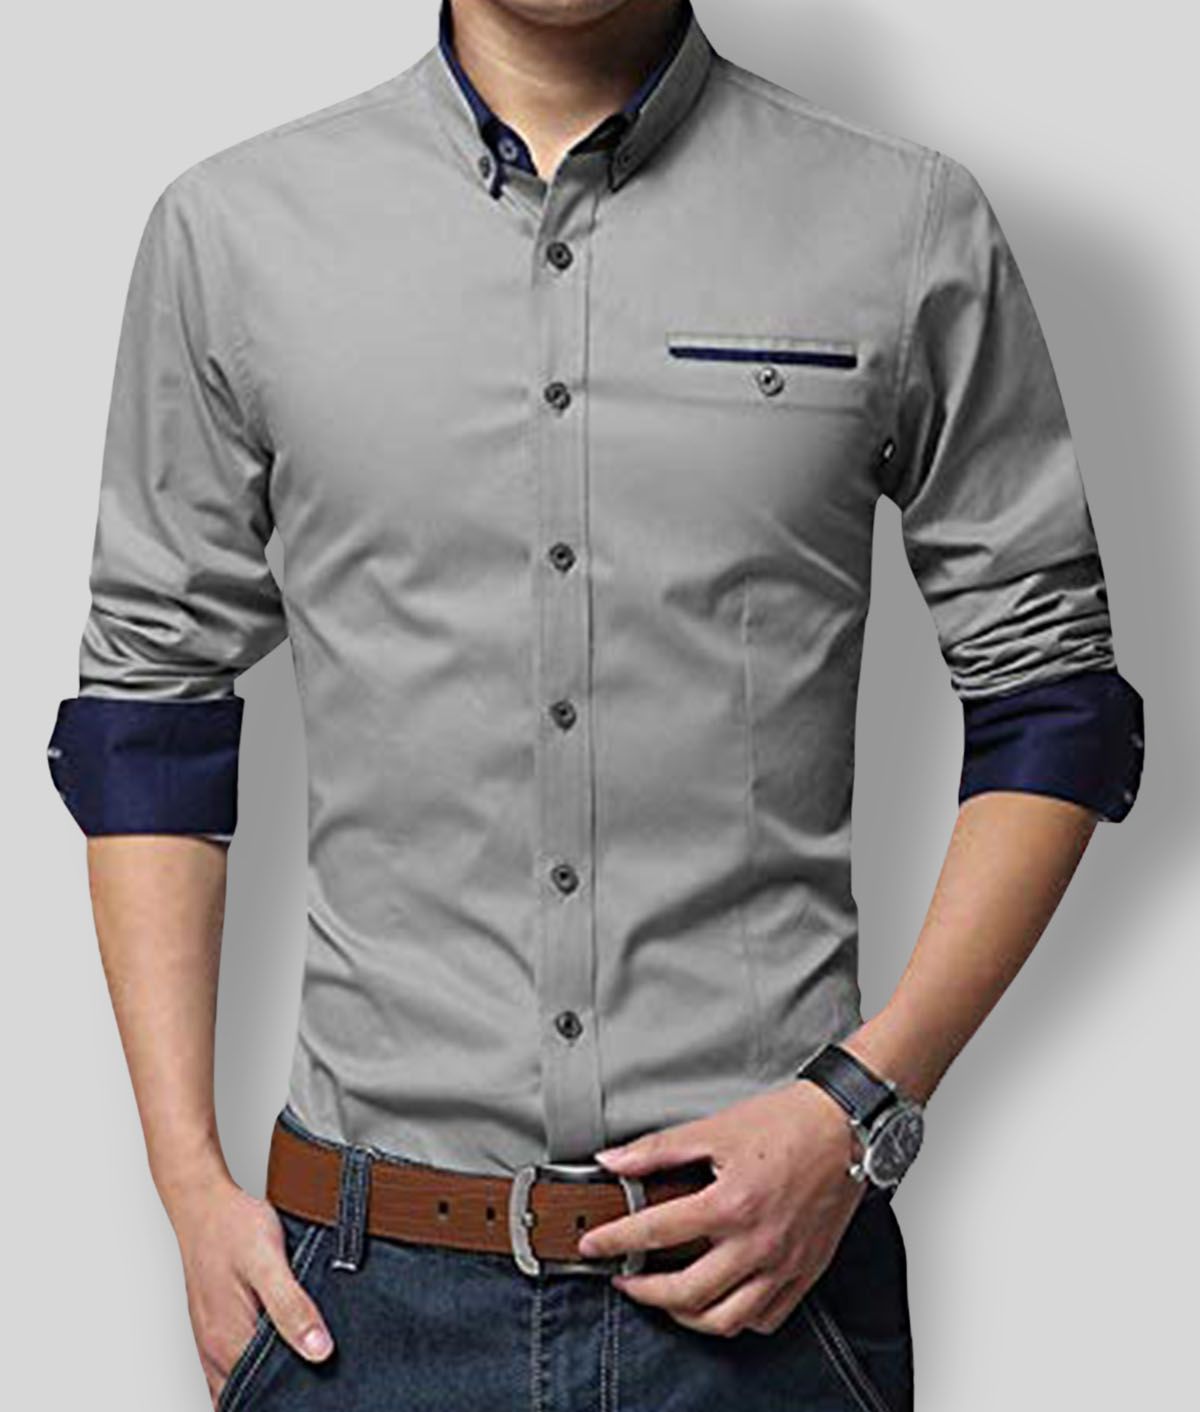 P&V - Cotton Blend Regular Fit Grey Men's Casual Shirt (Pack of 1)